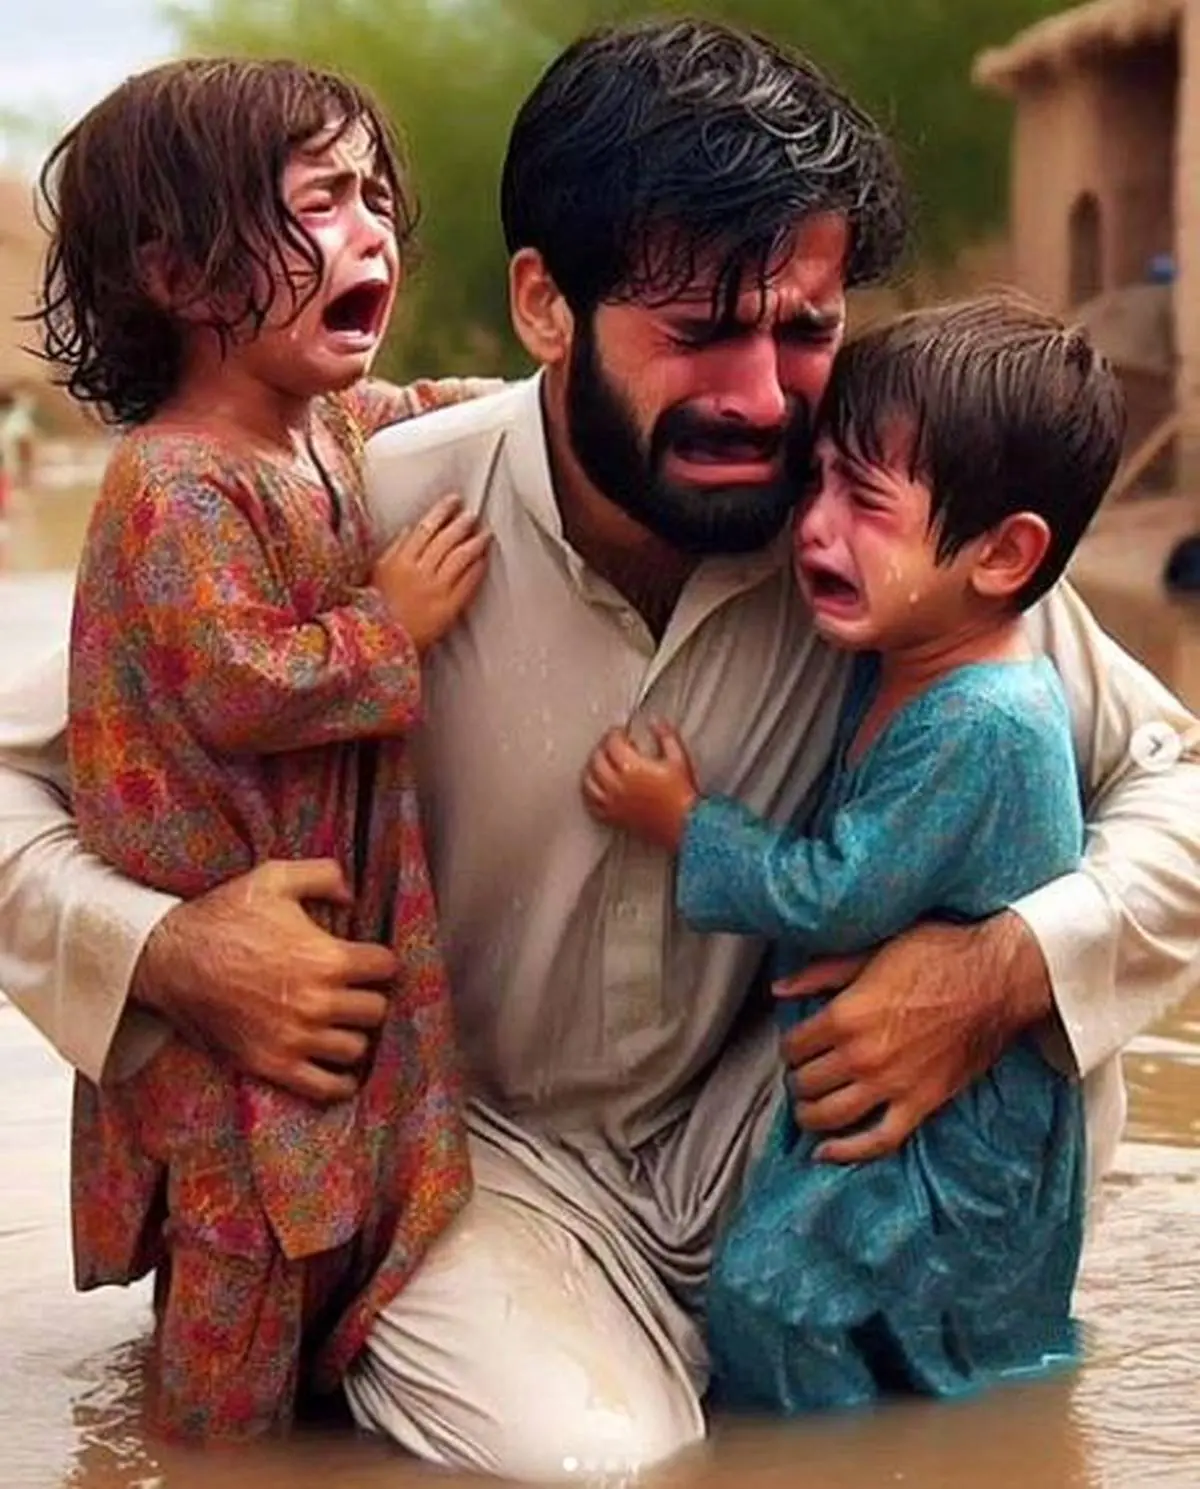 سیستان و بلوچستان را آب برد | تصاویر دردناک از زندگی سخت مردم در سیستان